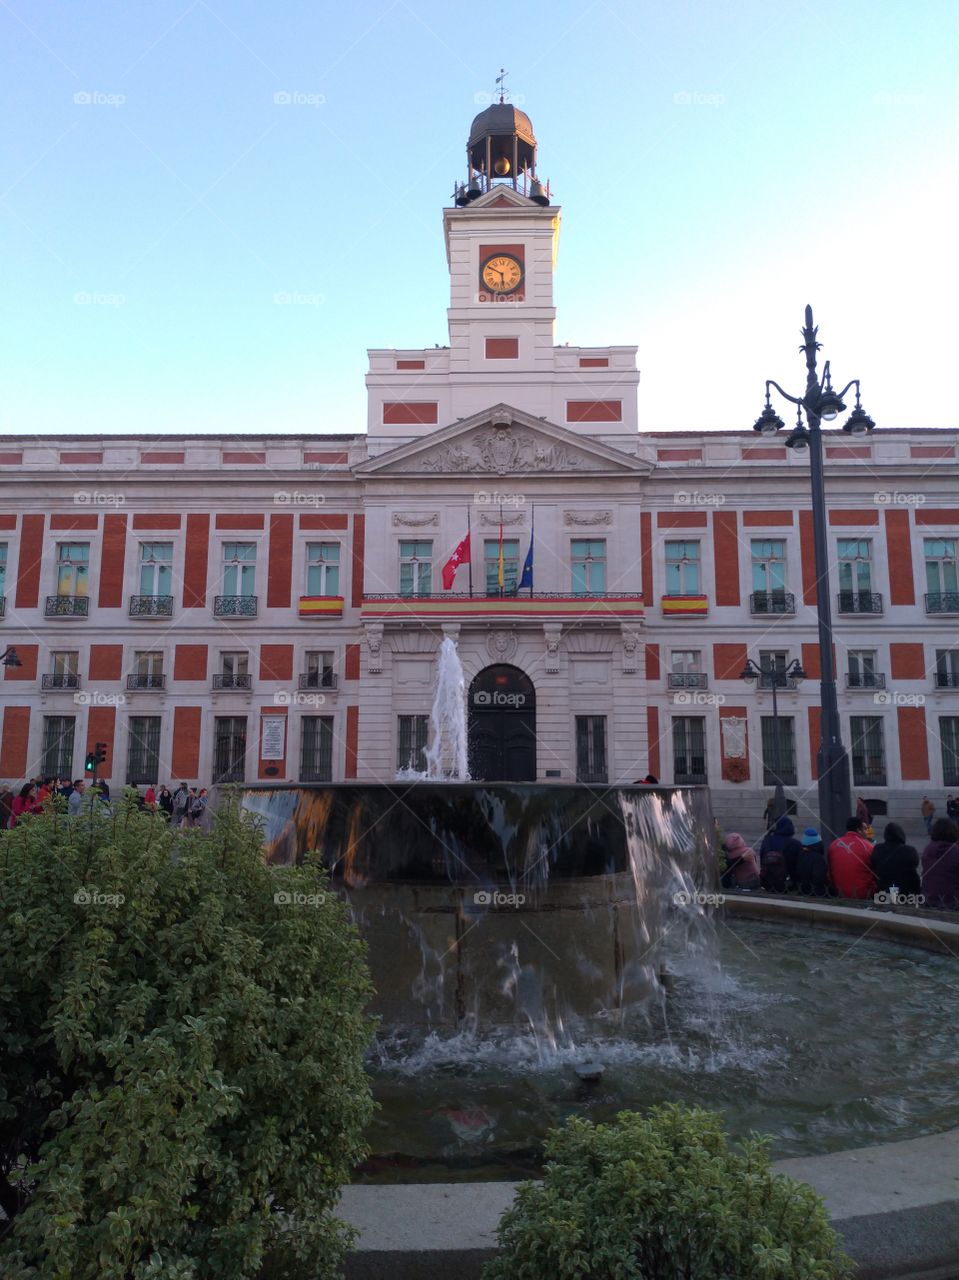 Edificio de Madrid en Puerta de Sol. SpainTourism